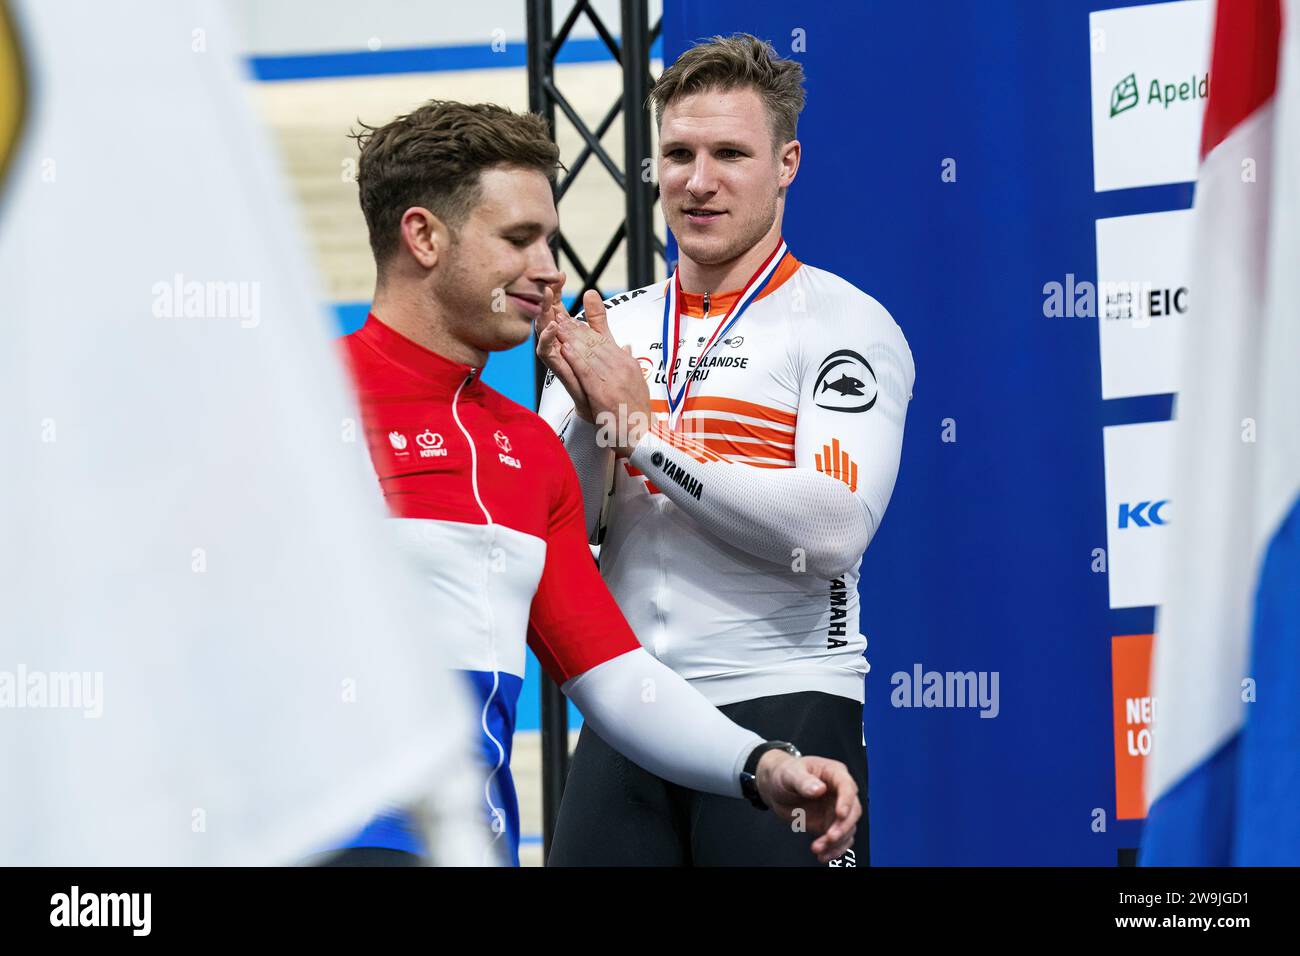 APELDOORN - Jeffrey Hoogland arriva secondo nella sezione sprint del campionato olandese di ciclismo su pista di Omnisport e si congratula con Harrie Lavreysen. ANP RONALD HOOGENDOORN Foto Stock